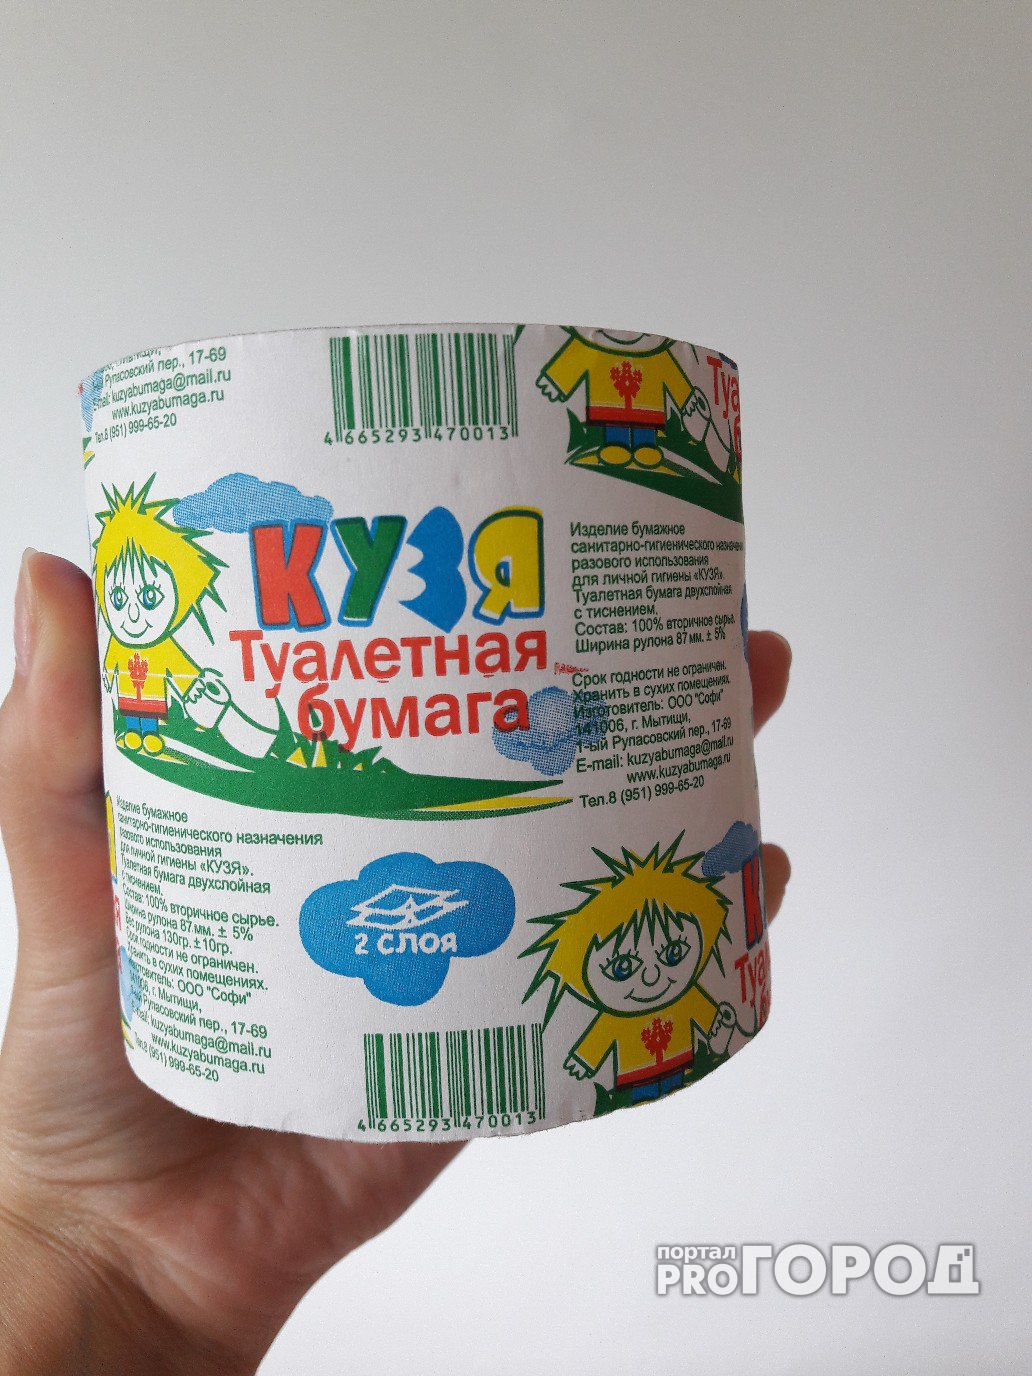 В России продают туалетную бумагу с символом Чувашии